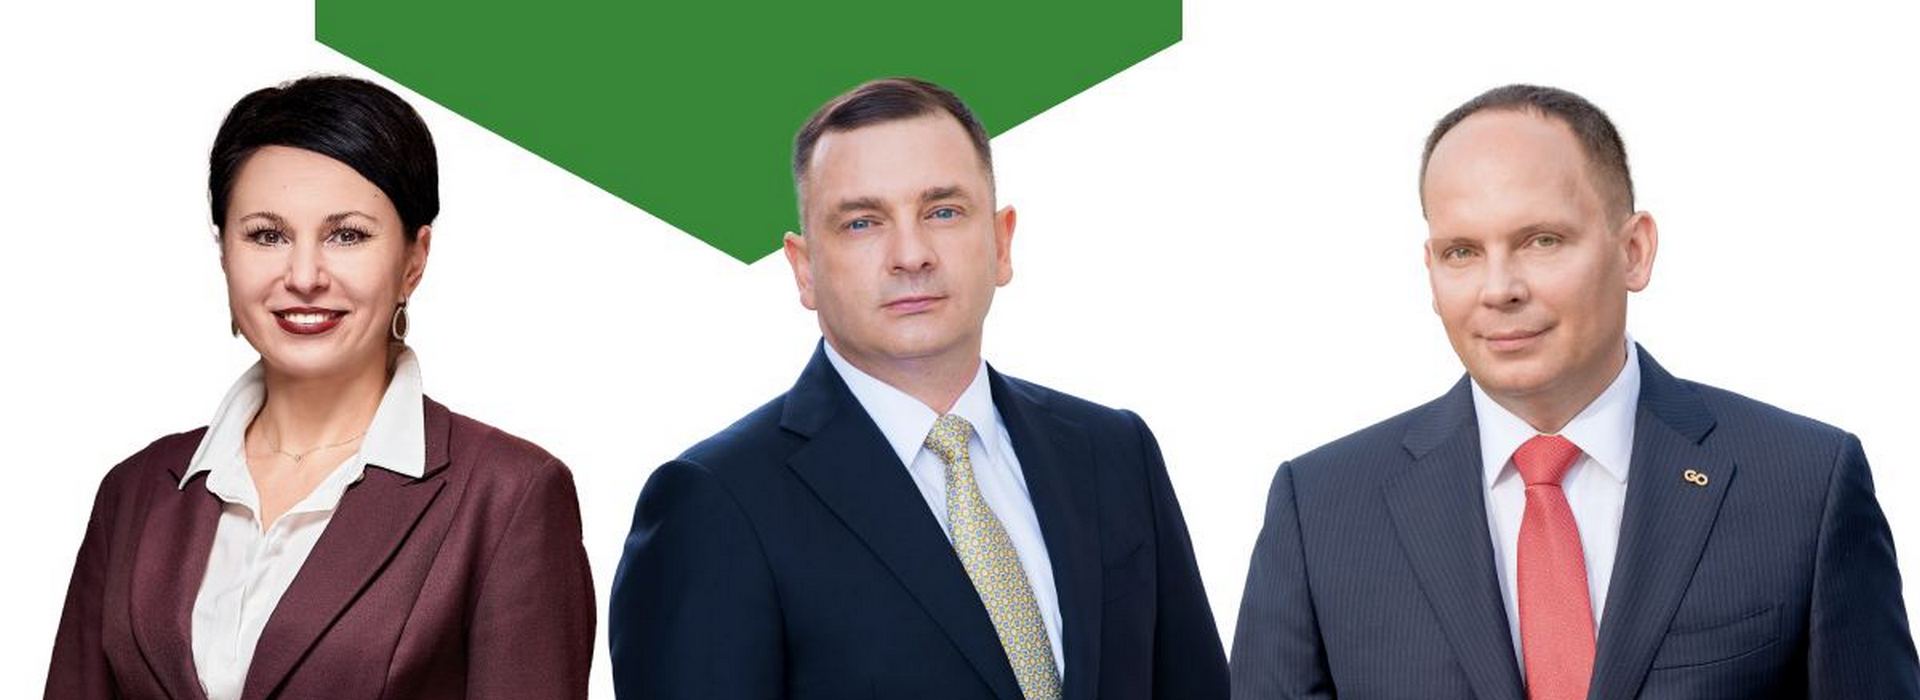 Адвокати GOLAW стали єдиними адвокатами України, що отримали найвище визнання – Global Leaders згідно з незалежним міжнародним рейтингом Who’s Who Legal 2022